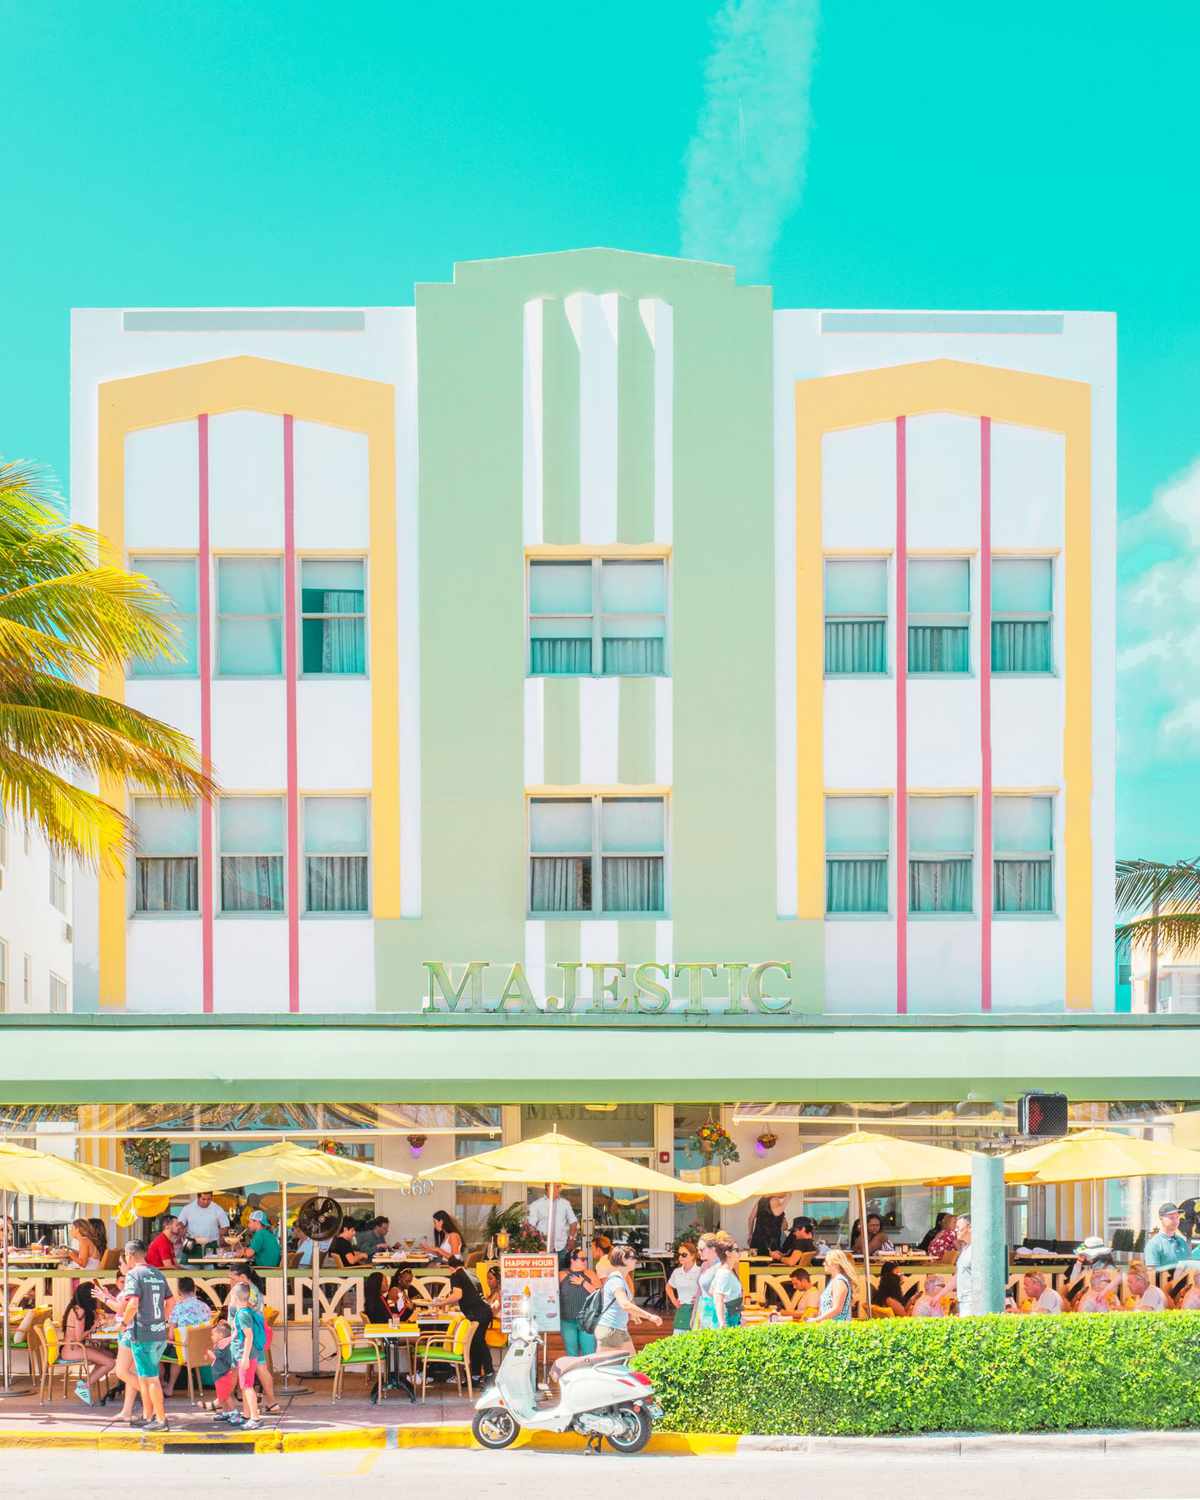 The Majestic pastel exterior in Miami, FL